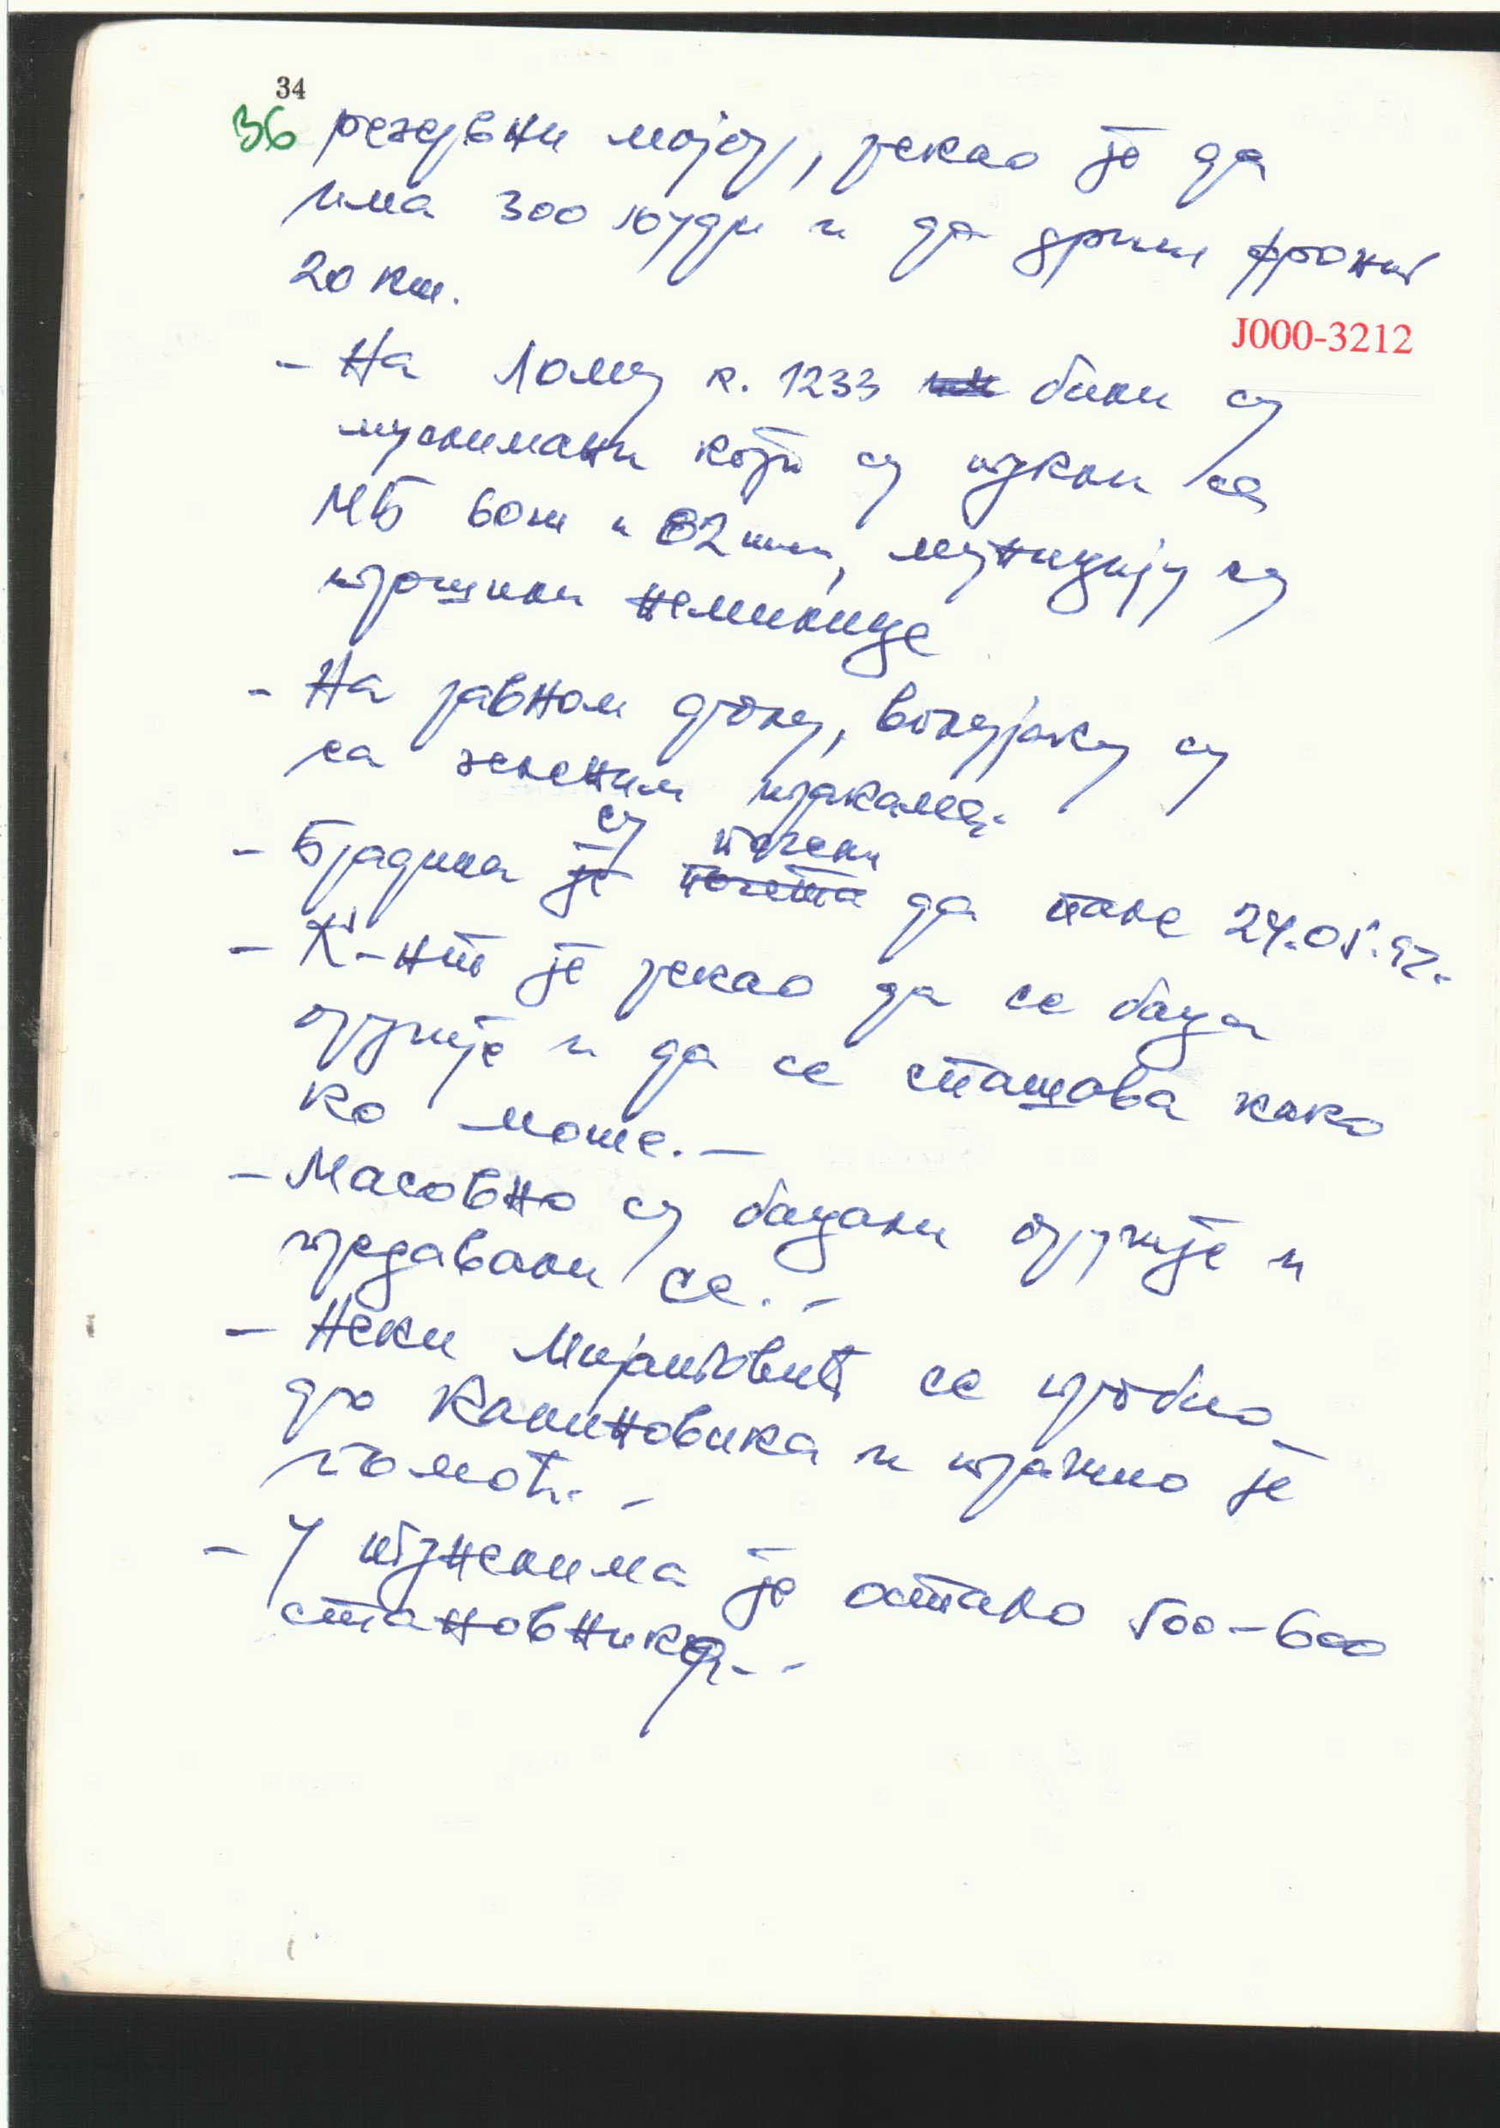 Ratko Mladic’s original wartime diaries (1992-95). Image: ICTY